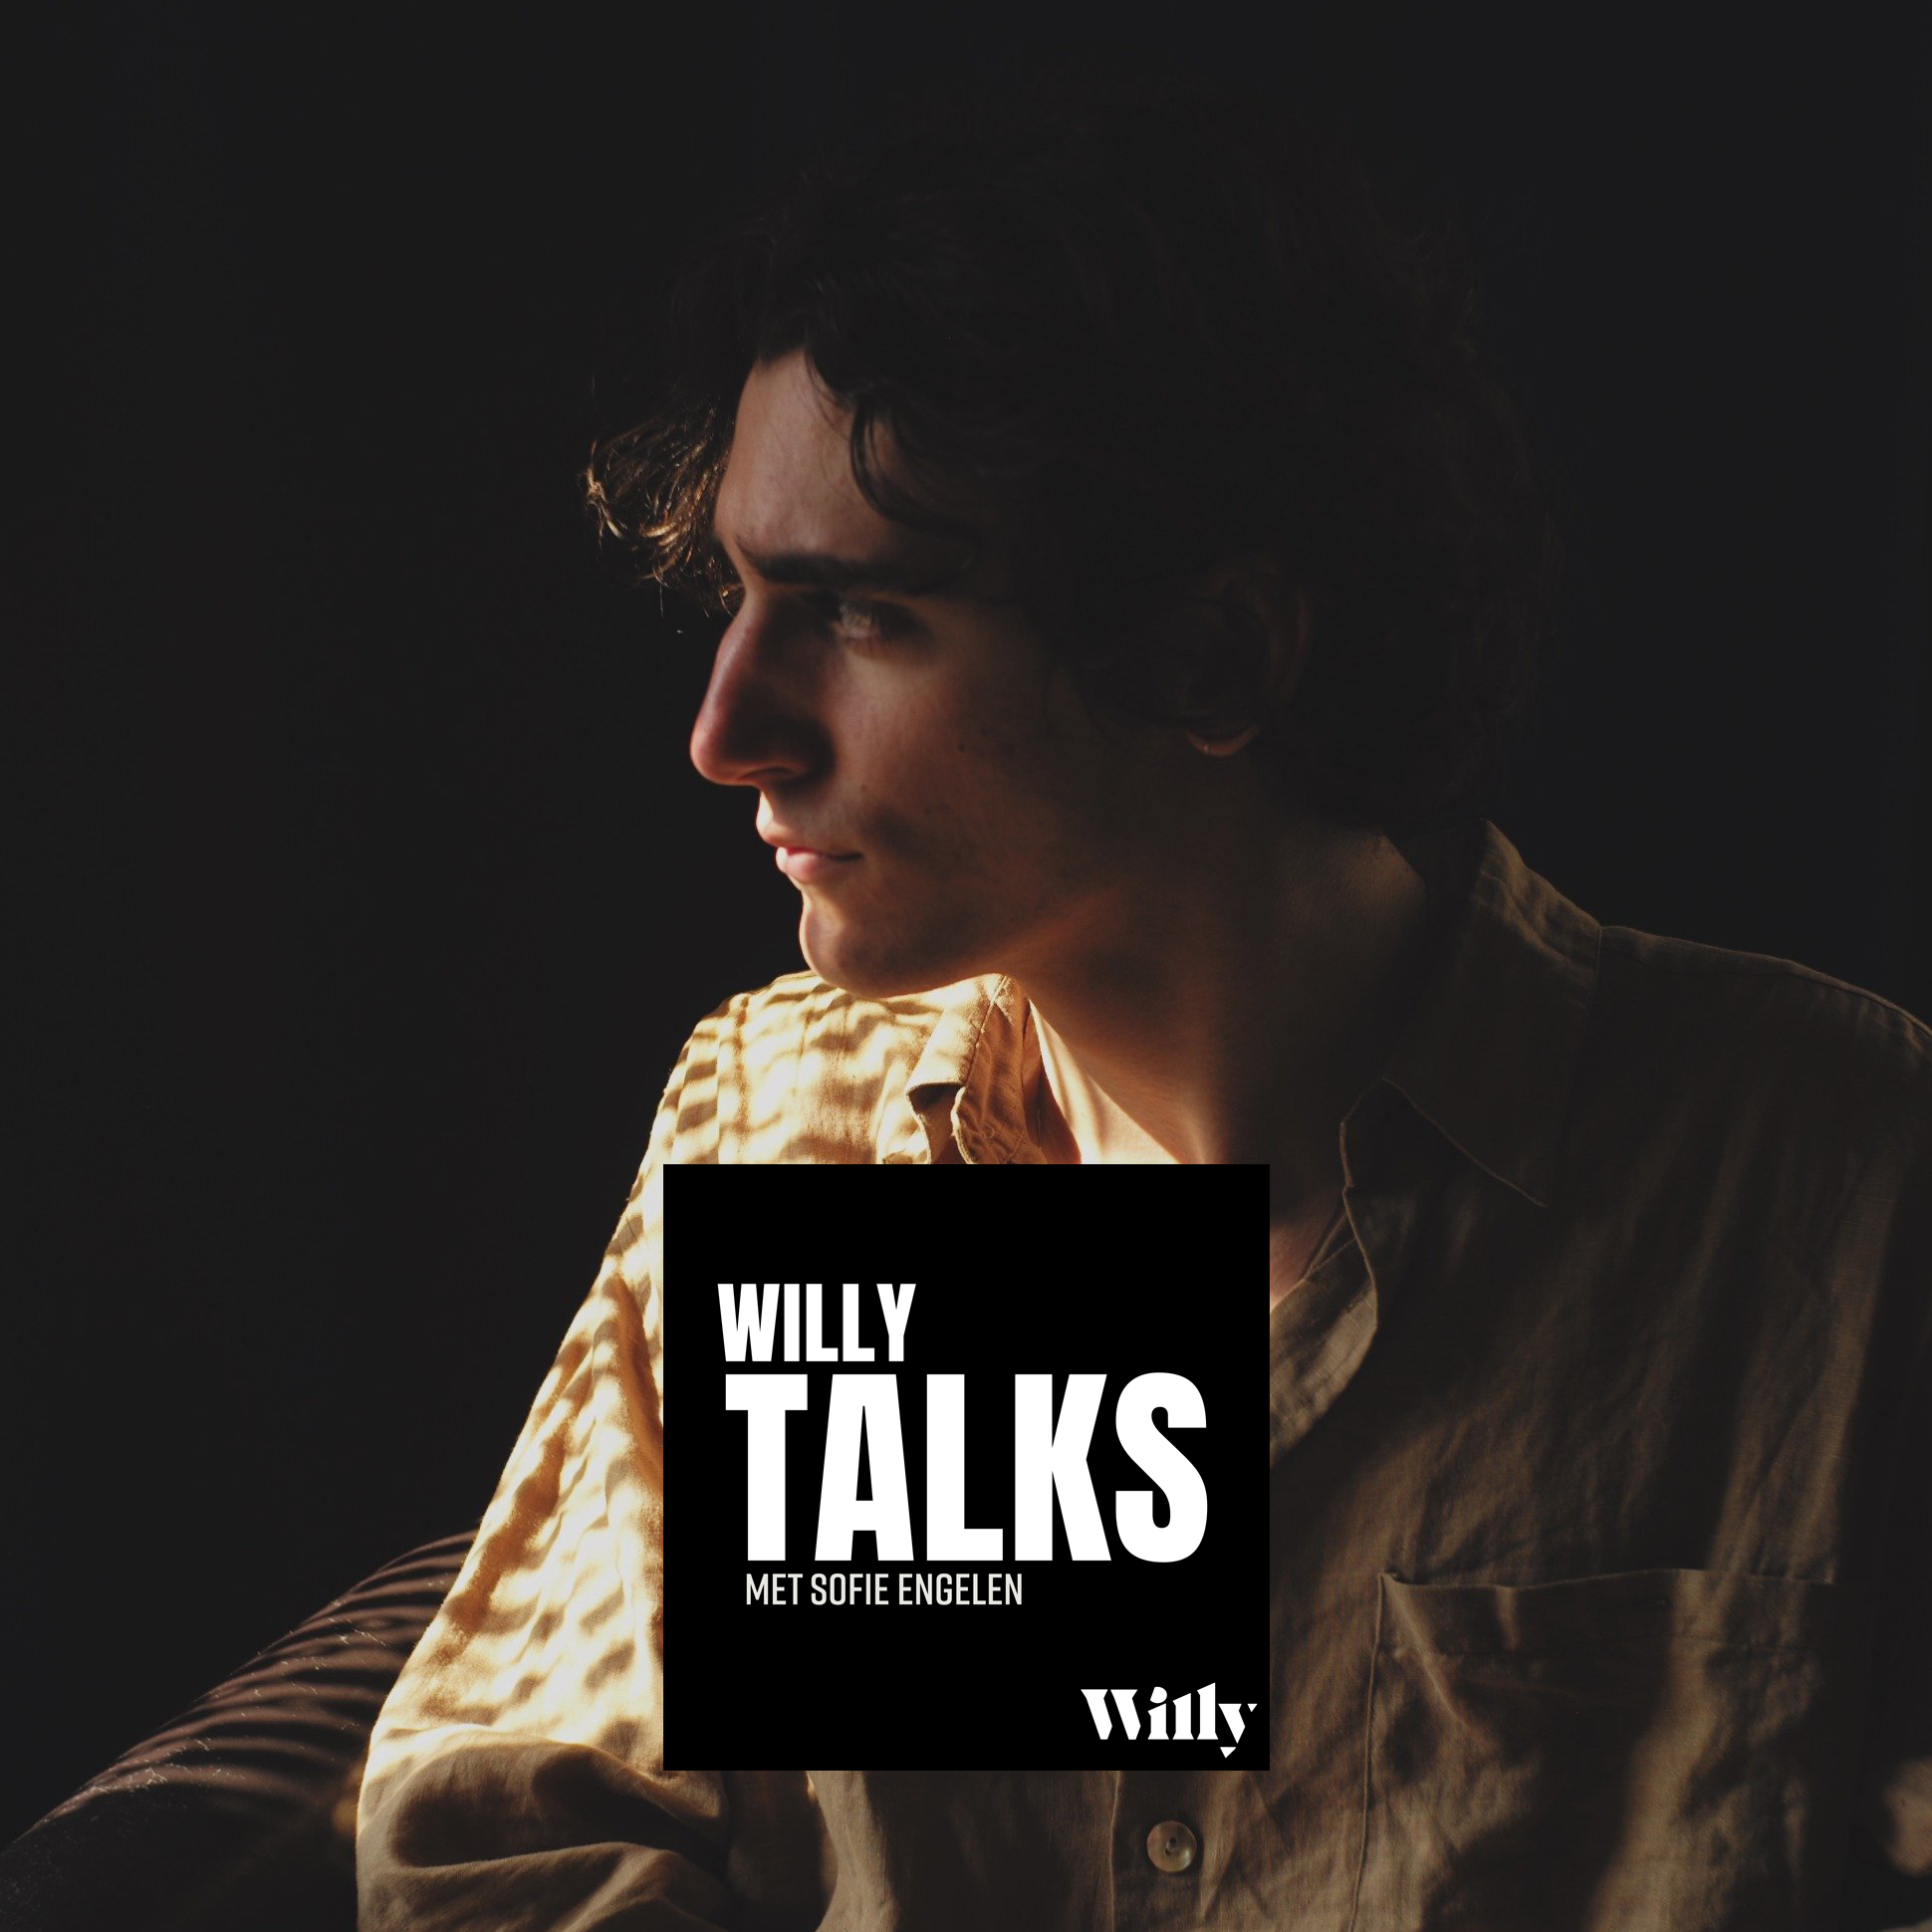 Willy talks  tamino podcast